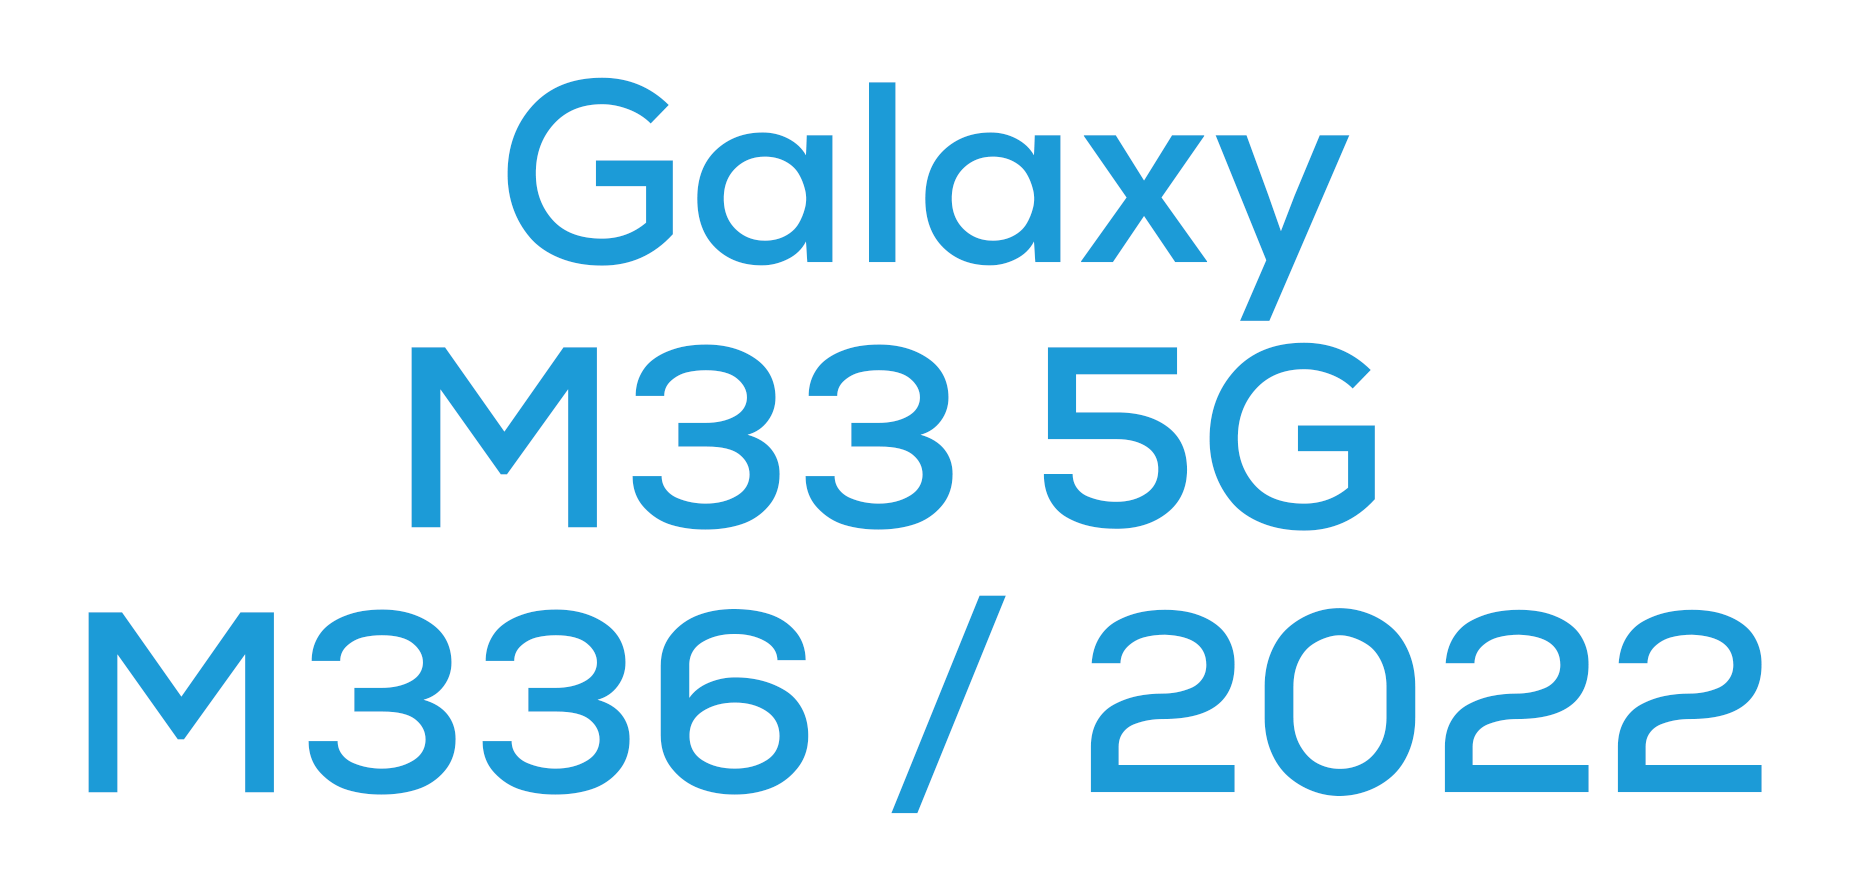 M33 5G (M336 / 2022)